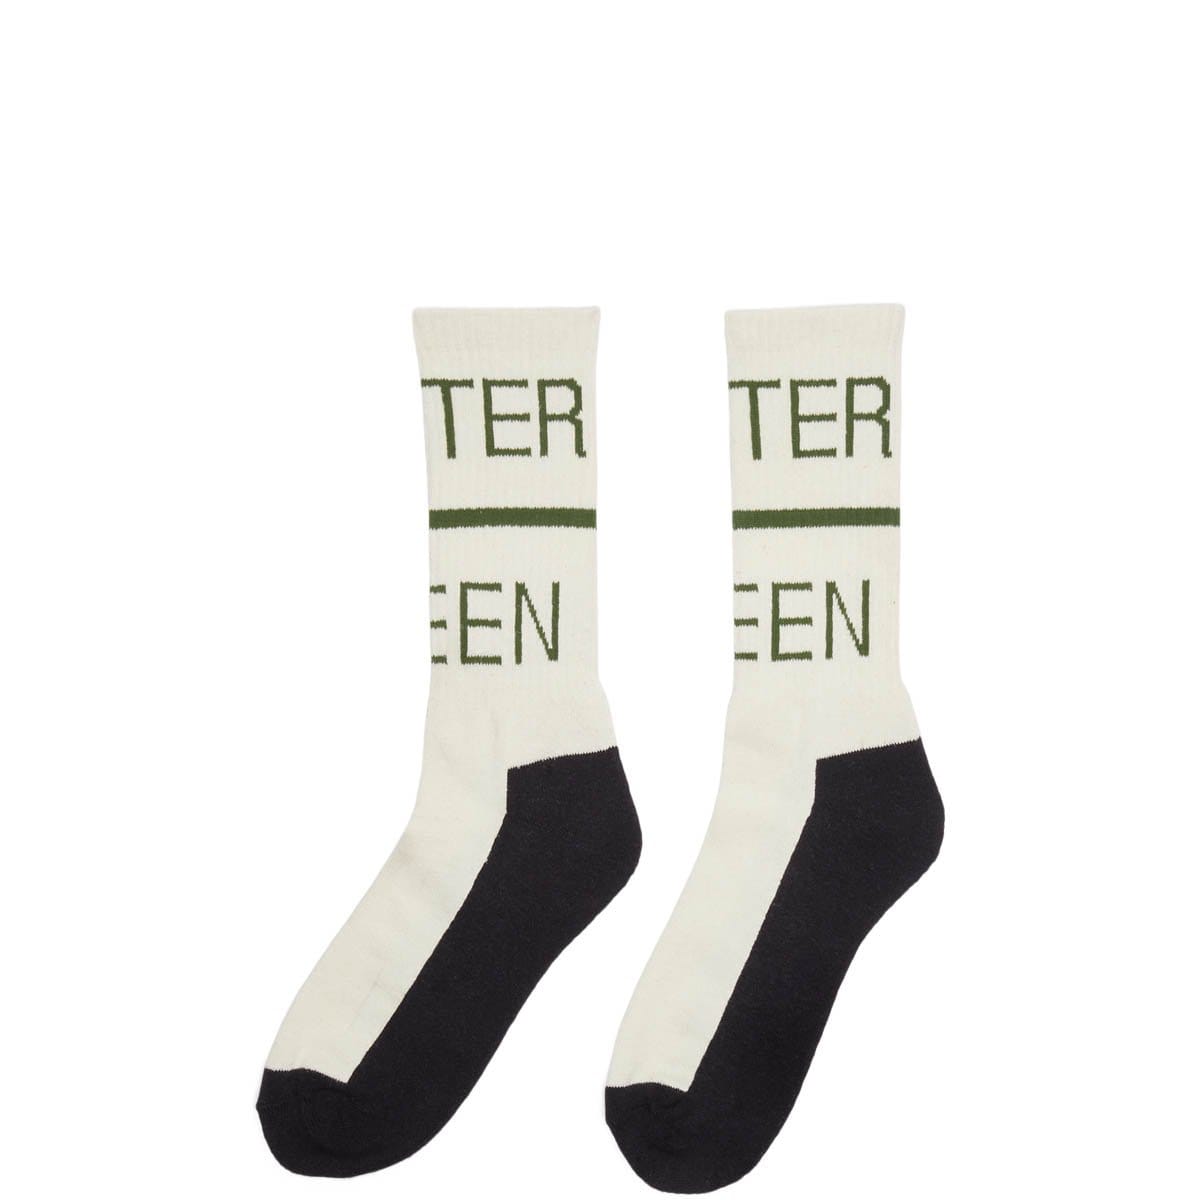 Mister Green Socks WHITE / OS MISTER GREEN SWISS HEMP SOCKS